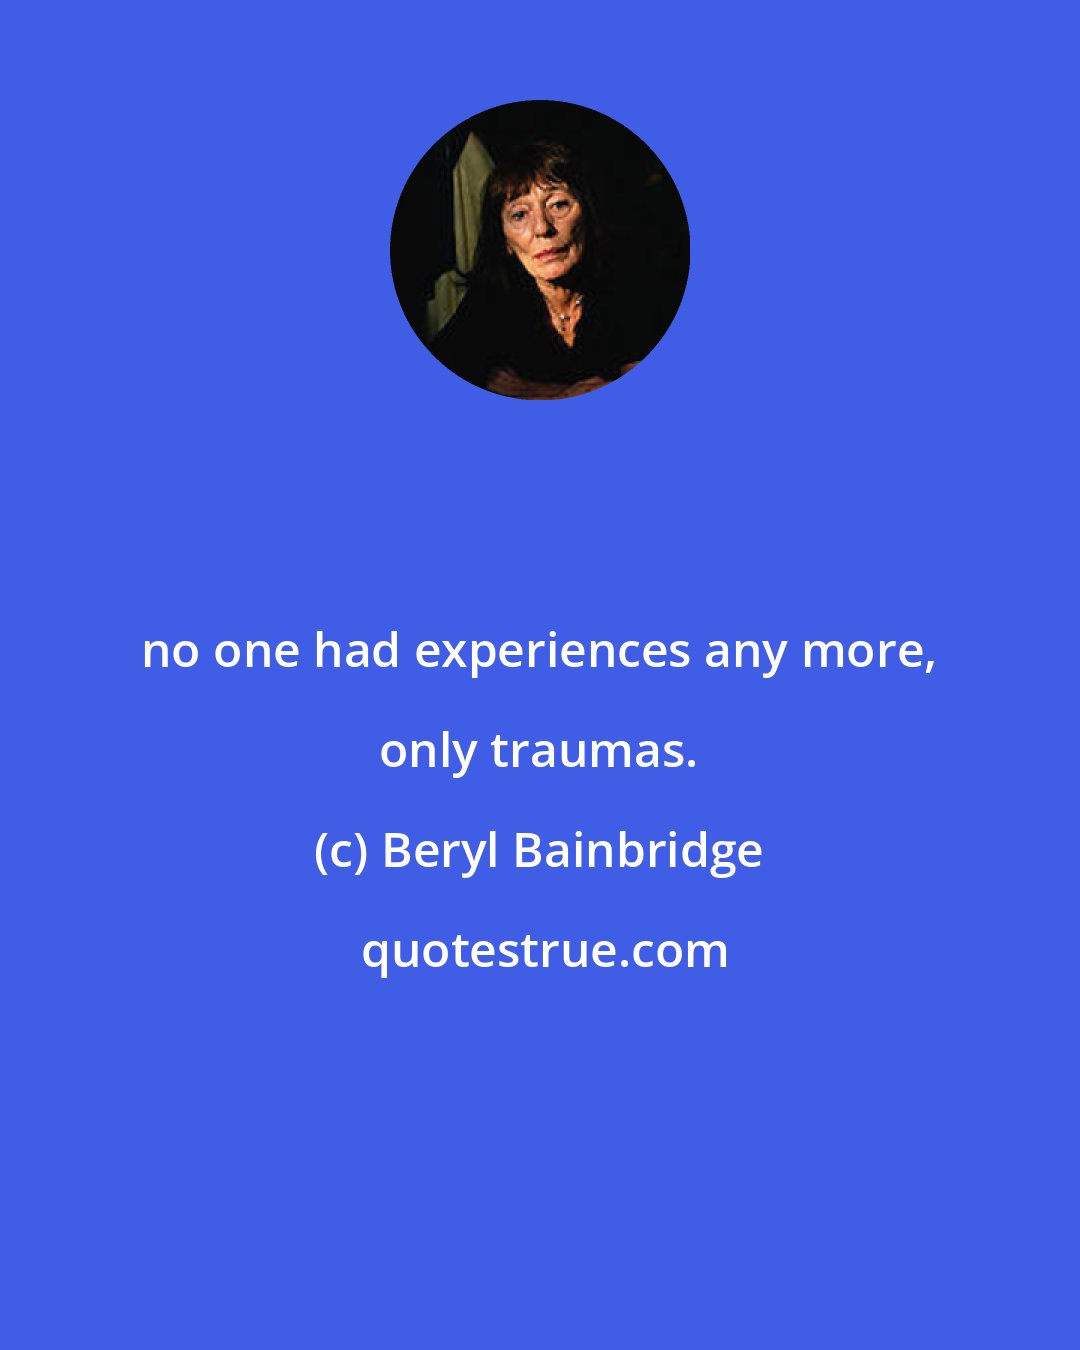 Beryl Bainbridge: no one had experiences any more, only traumas.